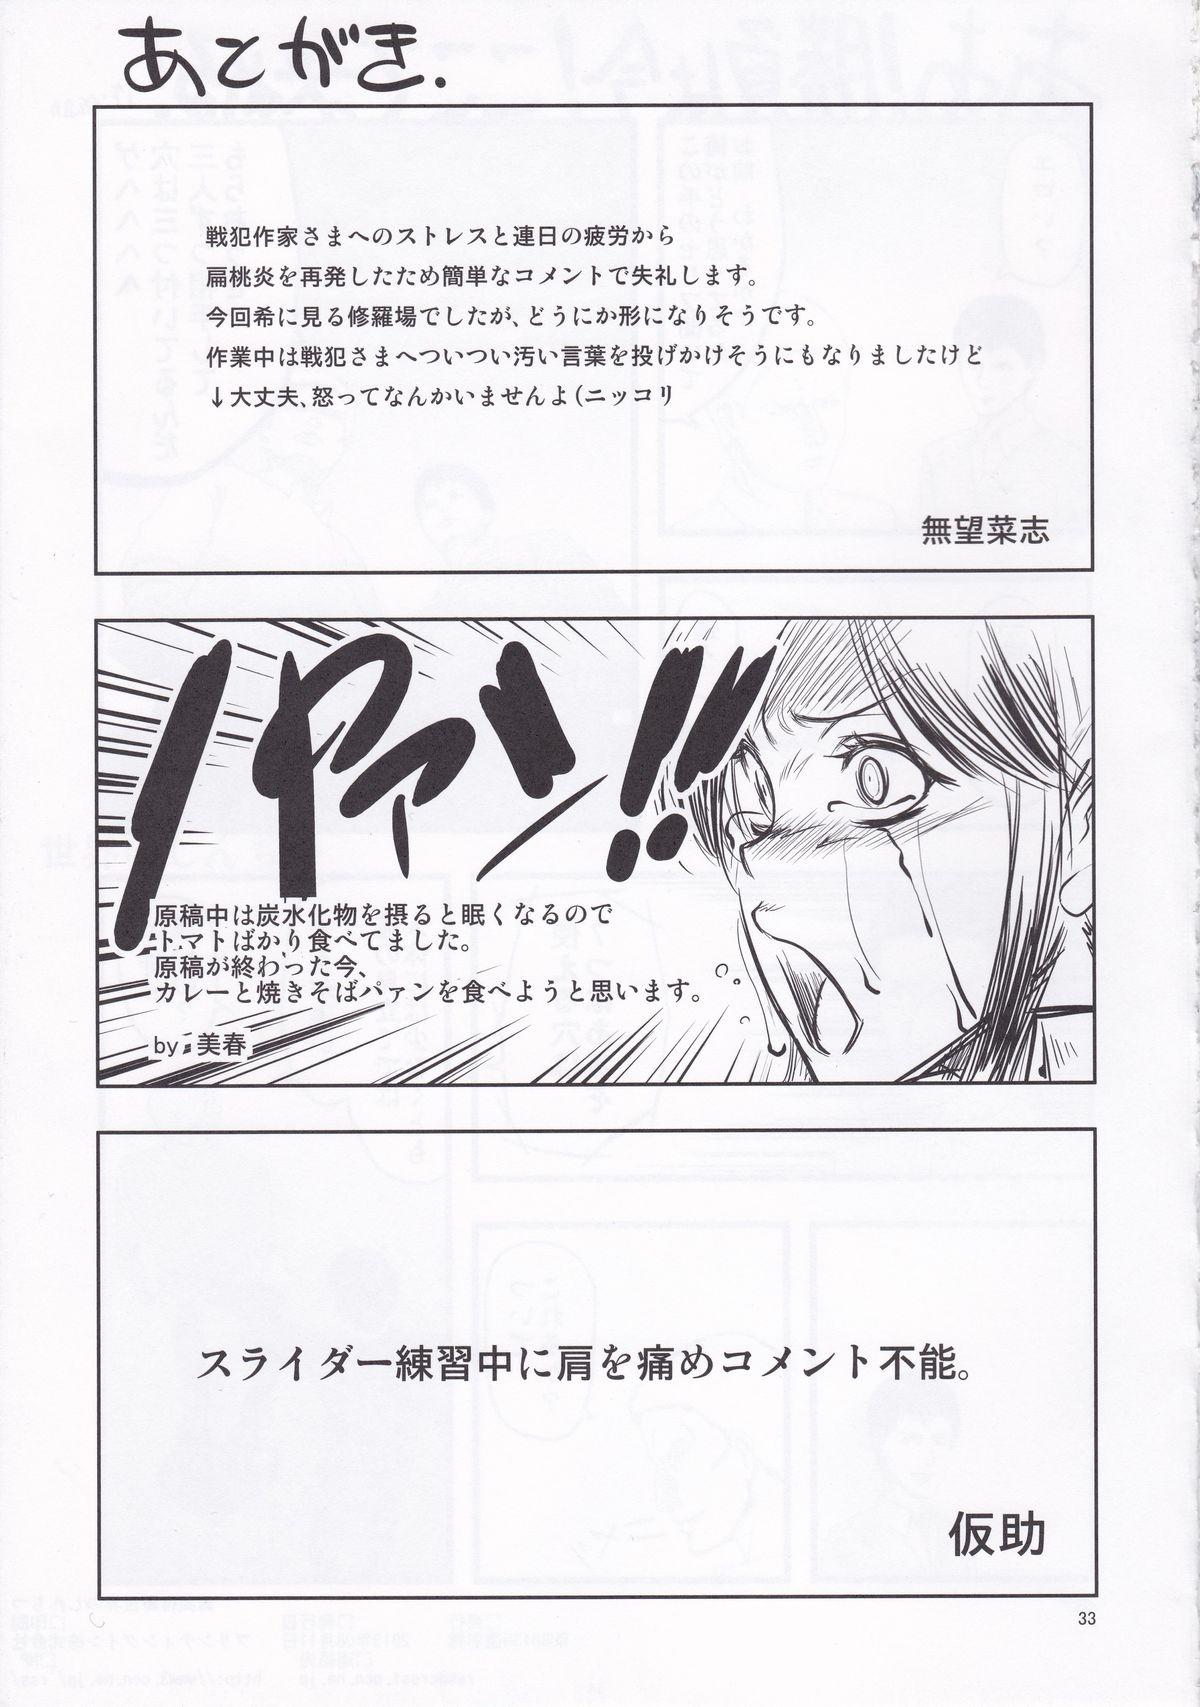 Cut Sekai no Shinditsu - Shingeki no kyojin Close Up - Page 33